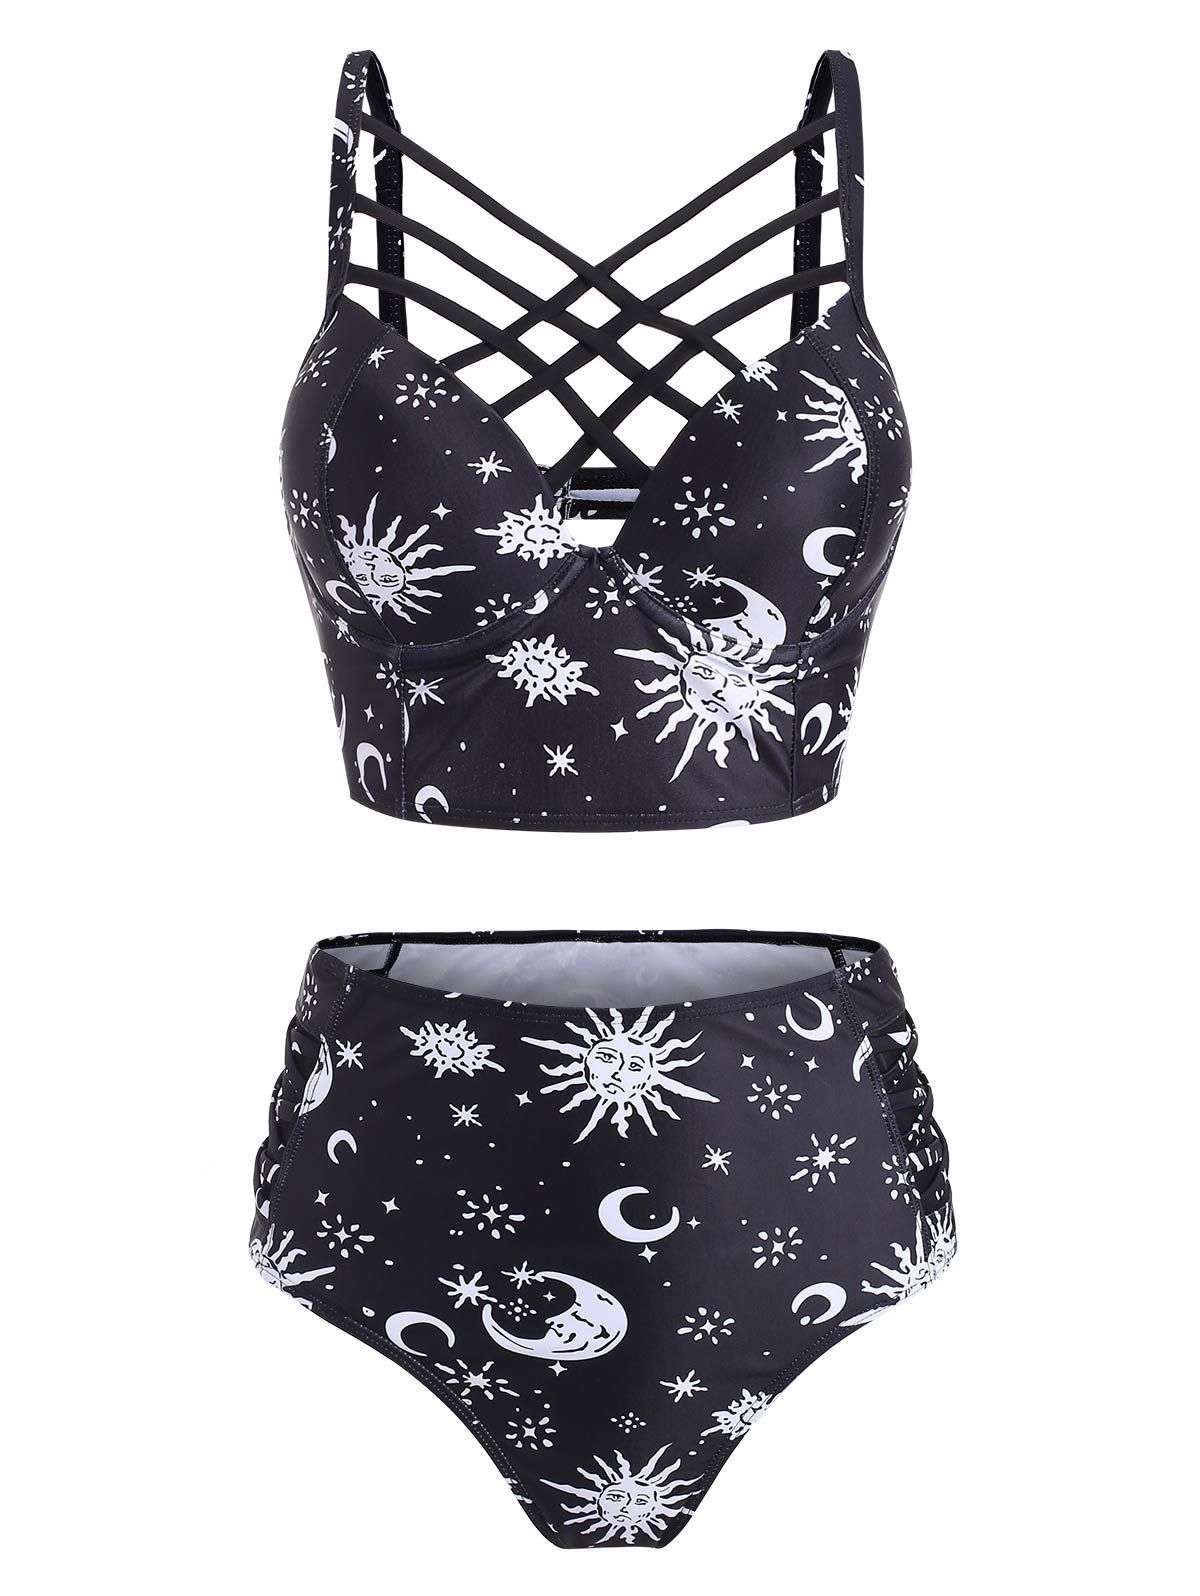 Vintage Tankini Swimsuit Corset Moon Sun Bathing Suit Star Print Lattice Summer Beach Swimwear - BLACK L